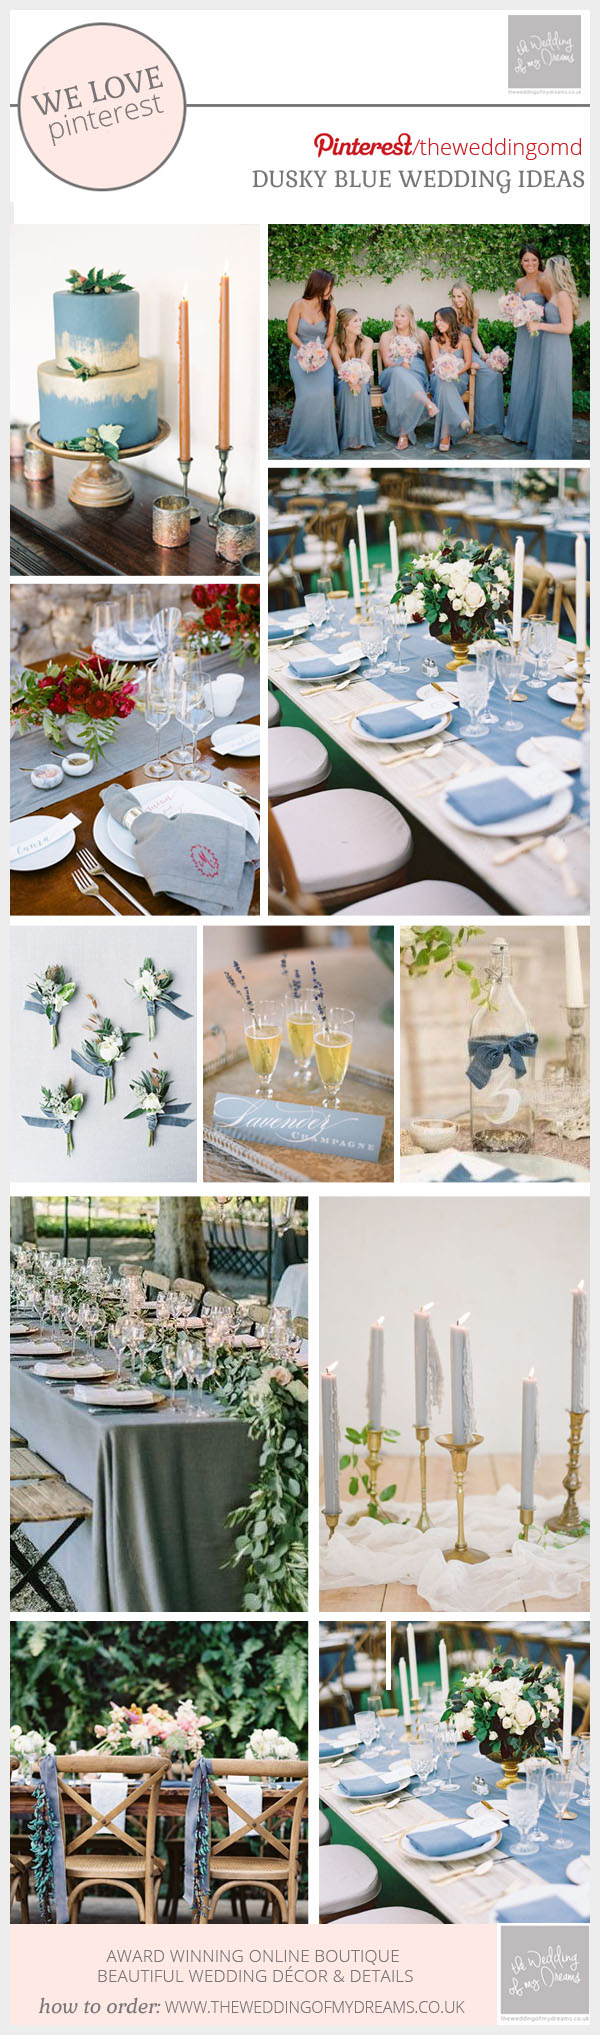 Dusky blue wedding ideas